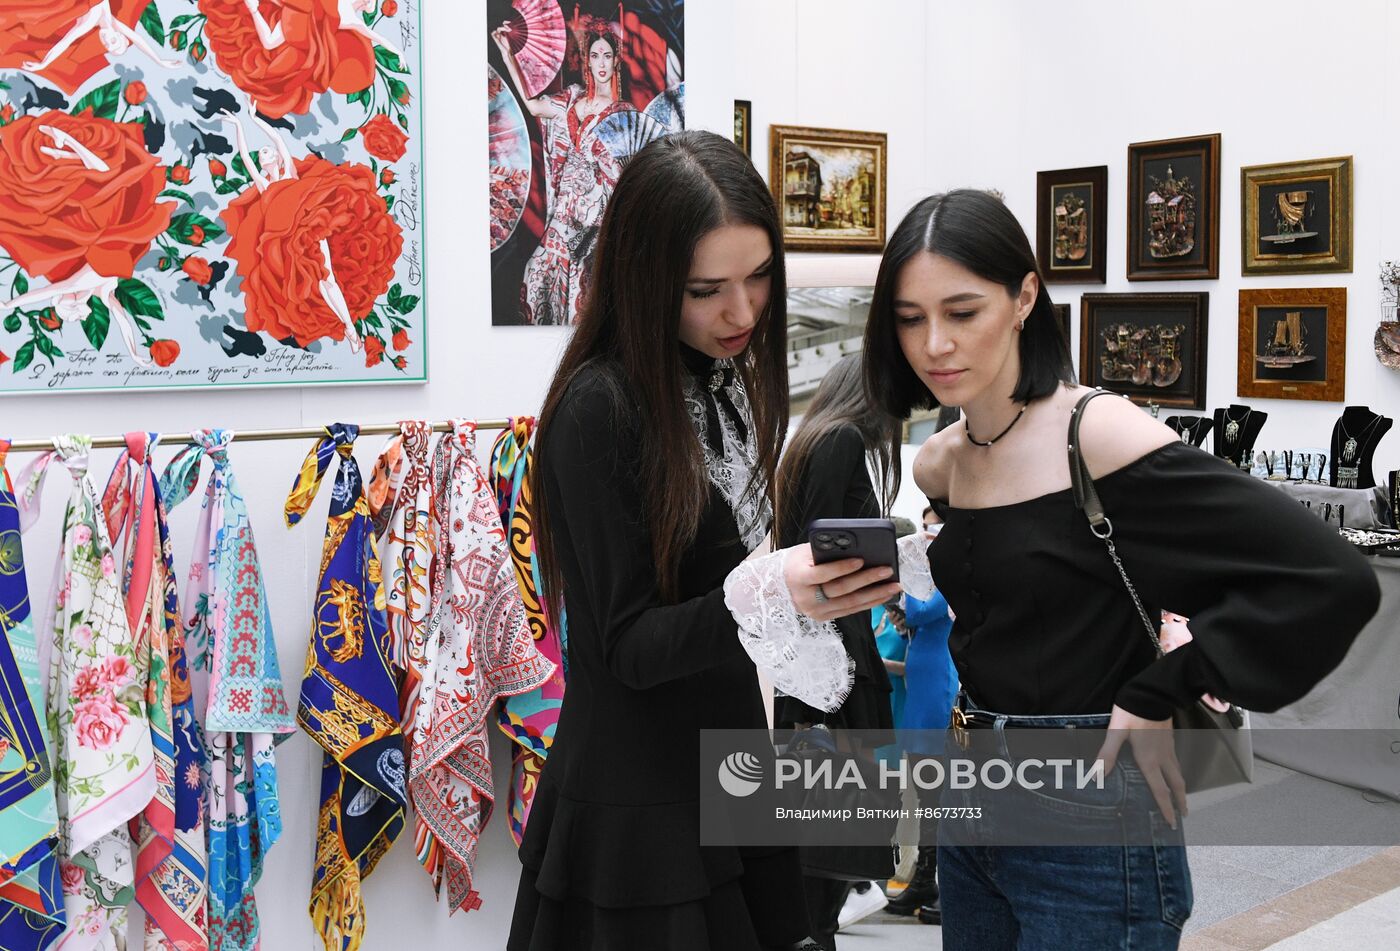 IV Художественно-промышленная выставка-форум "Уникальная Россия"